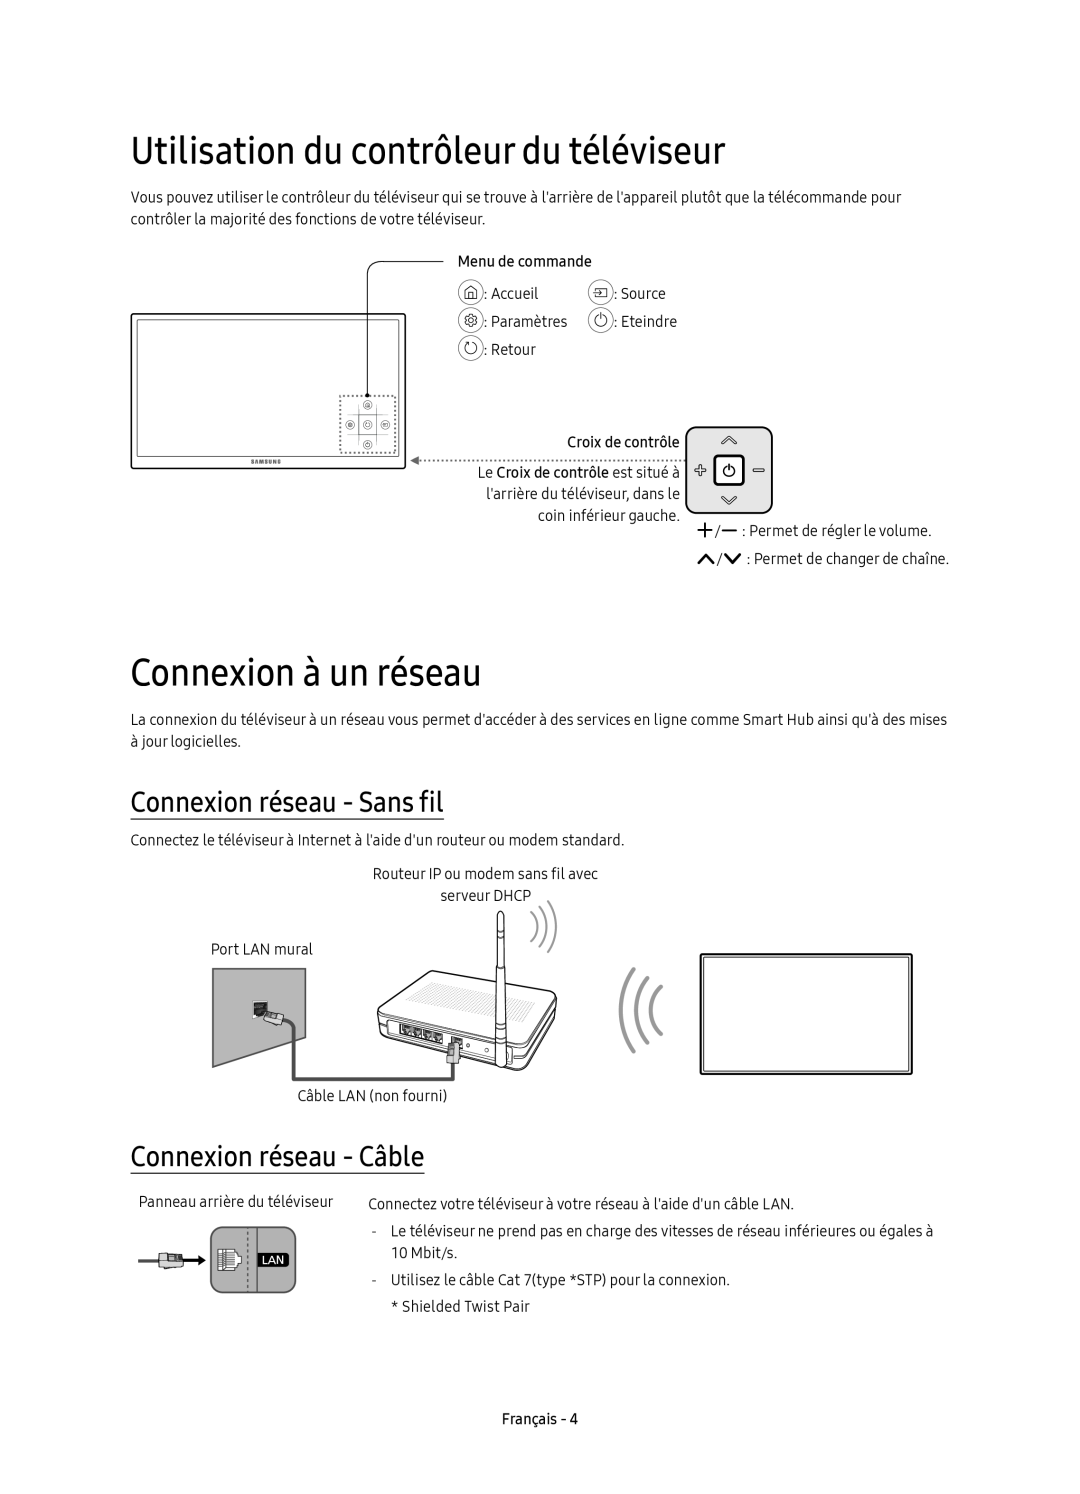 Samsung UE55KU6099UXZG manual Utilisation du contrôleur du téléviseur, Connexion à un réseau, Connexion réseau - Sans fil 